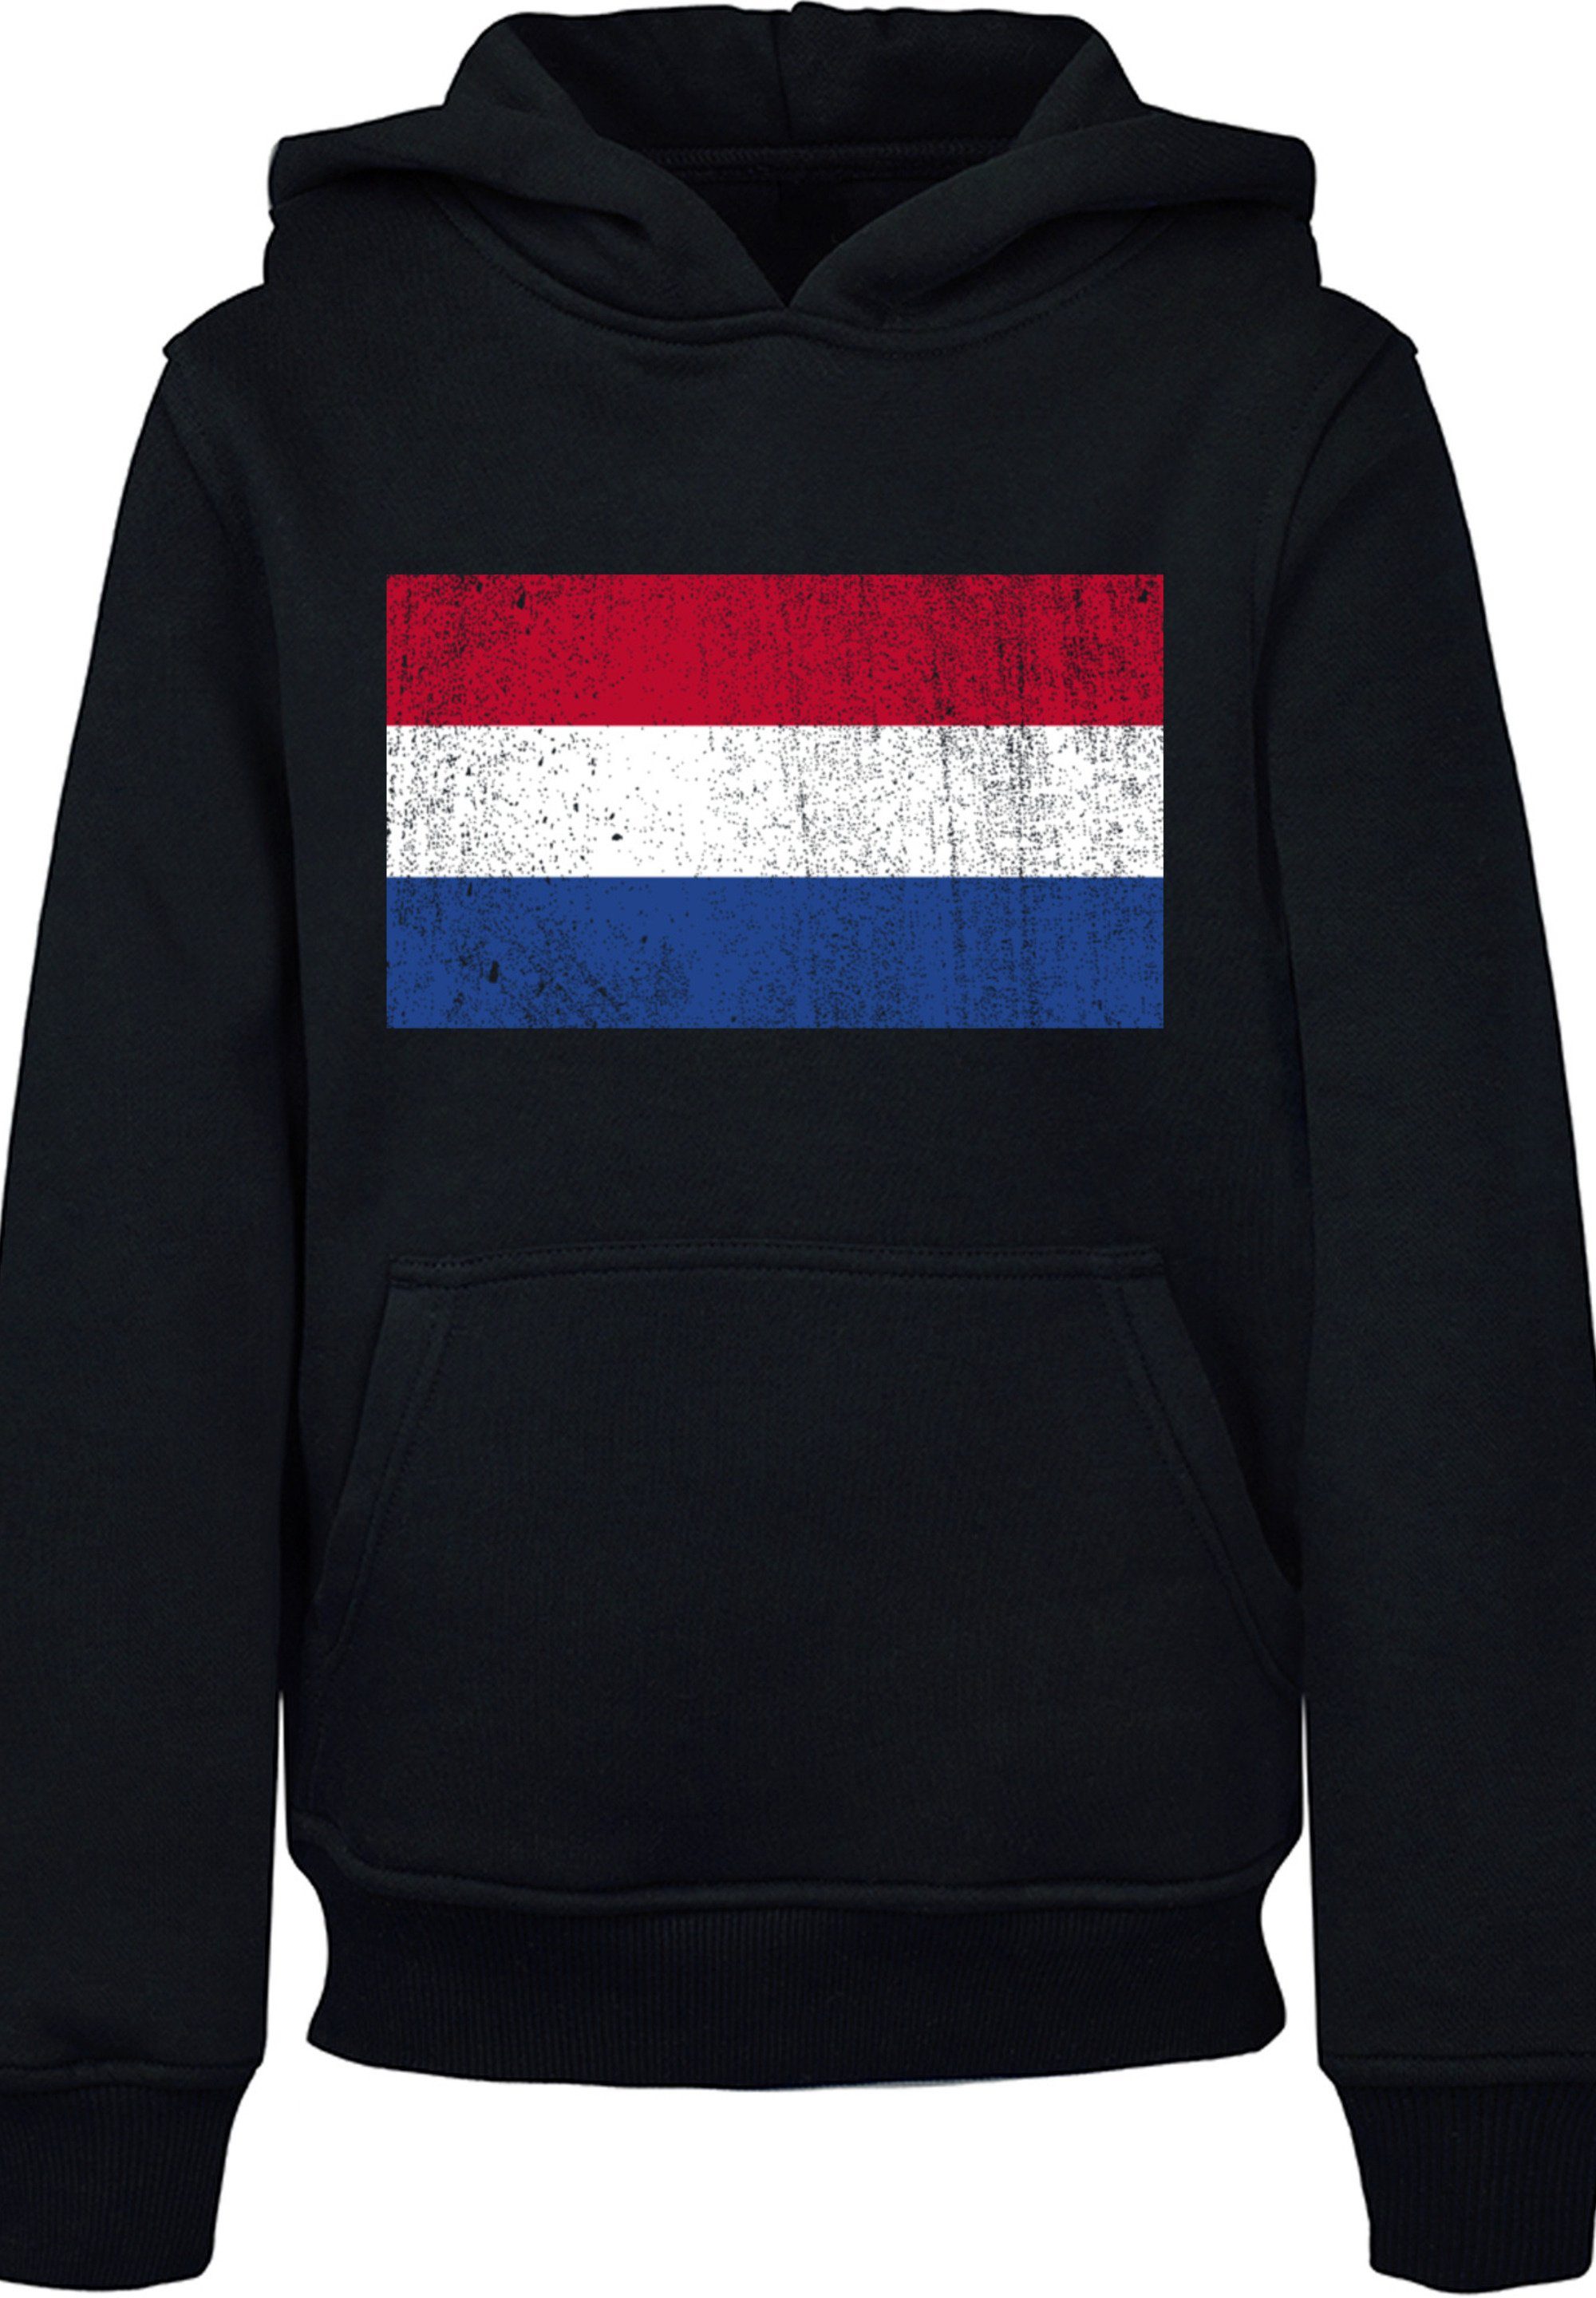 Kapuzenpullover Flagge Netherlands distressed Holland Print schwarz NIederlande F4NT4STIC